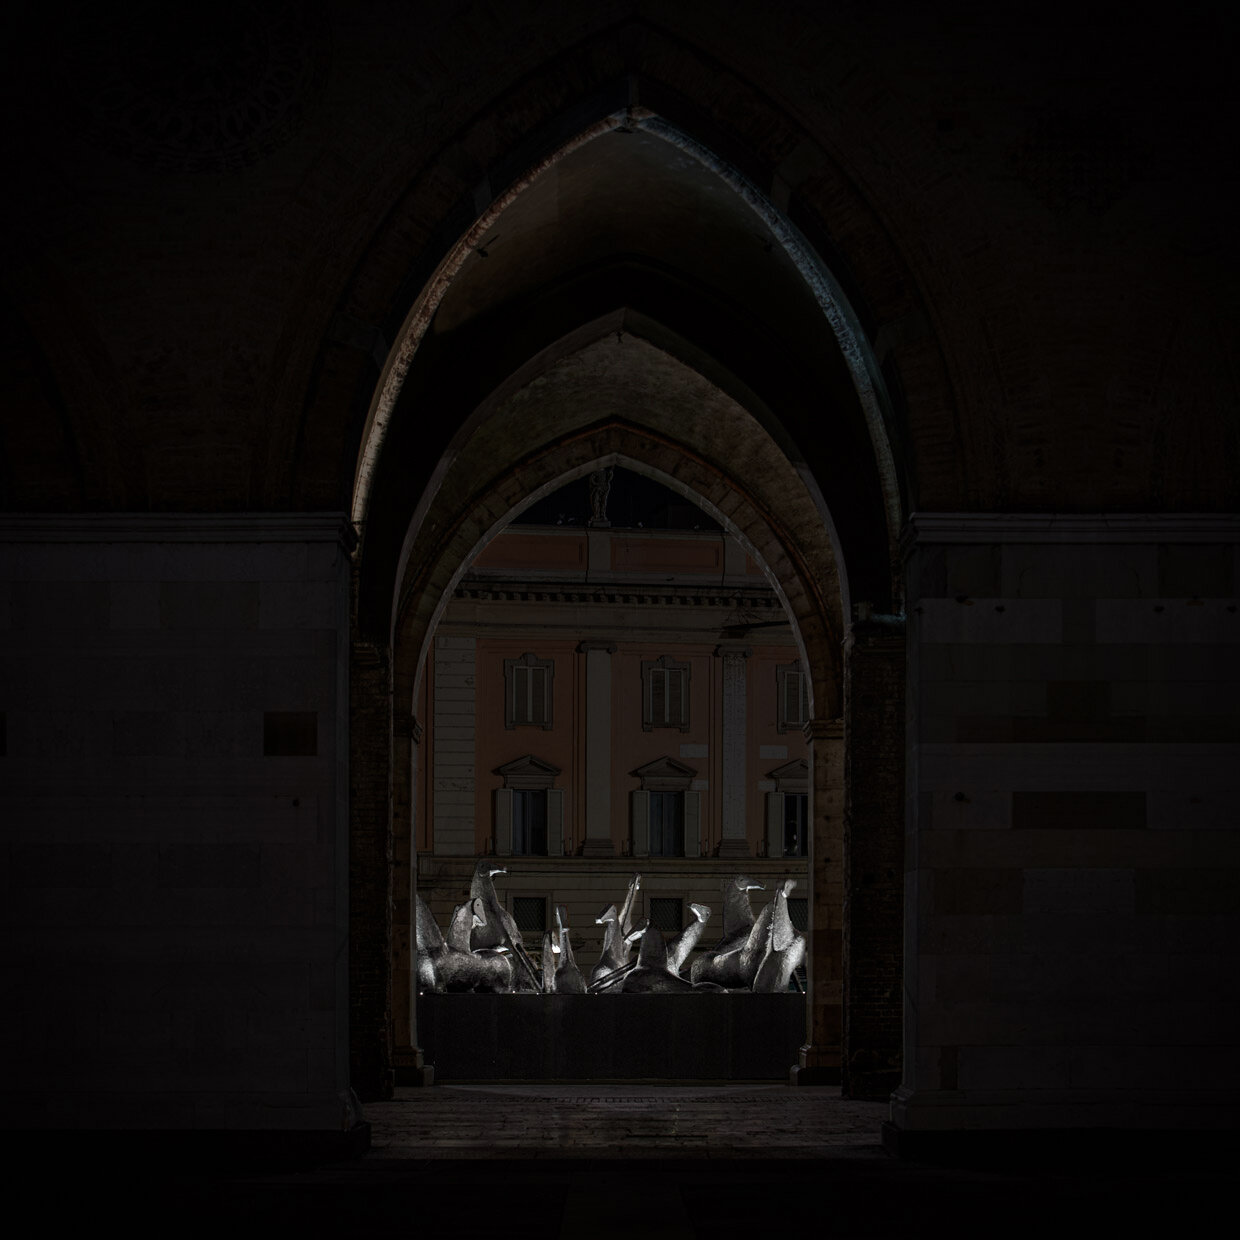 Installazione Mimmo Paladino a Piacenza | © Davide Groppi srl | All Rights Reserved